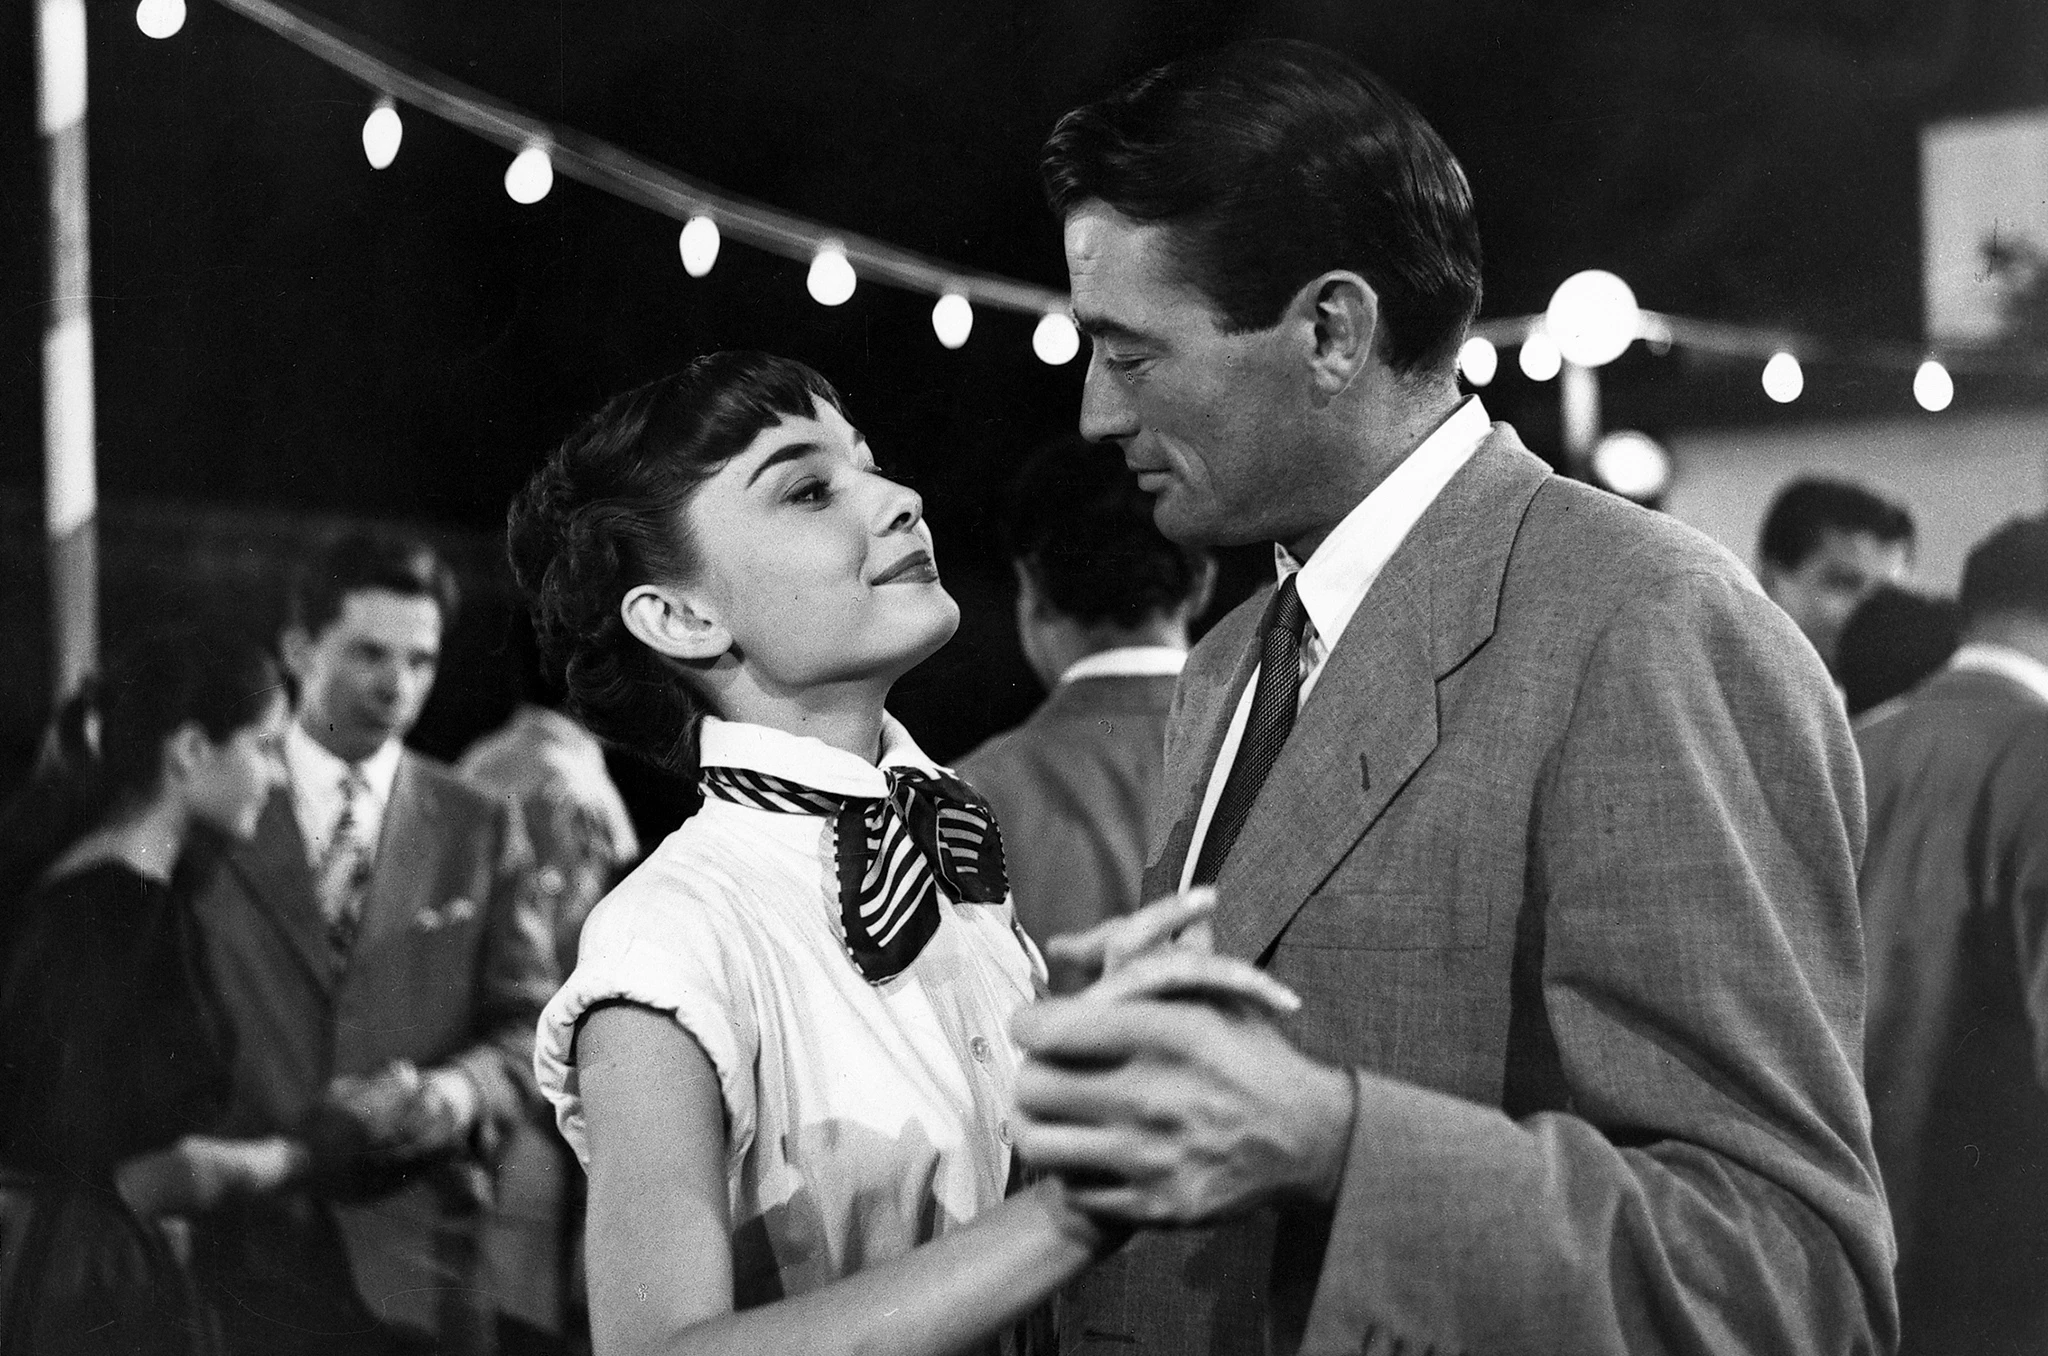 Roman Holiday (1953) - Movies like Breakfast at Tiffany's